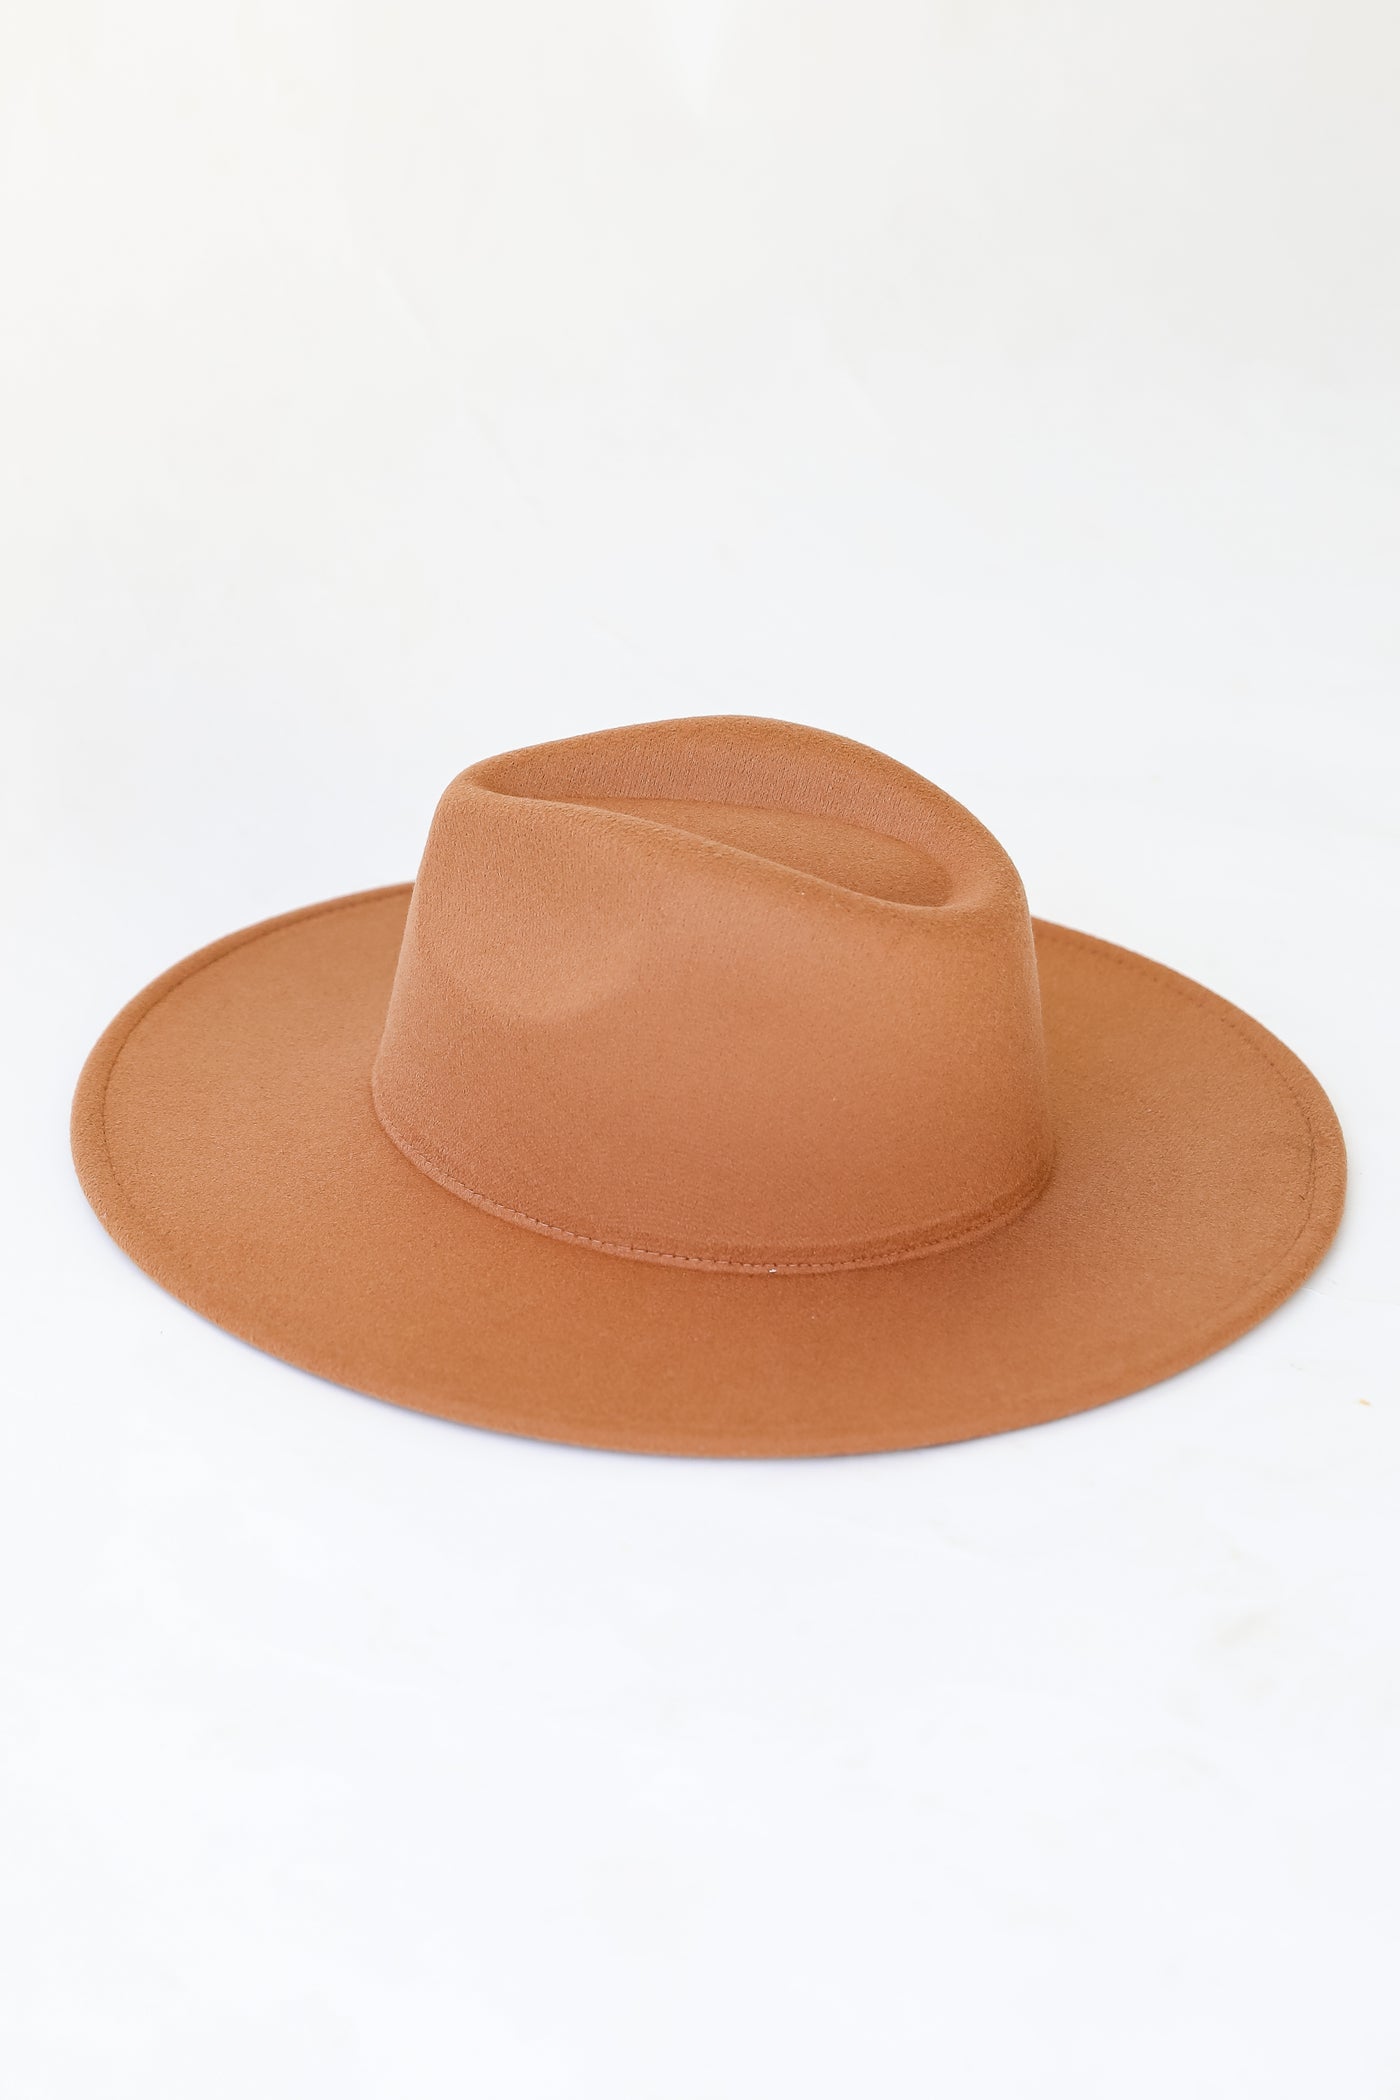 tan Wide Brim Fedora Hat flat lay